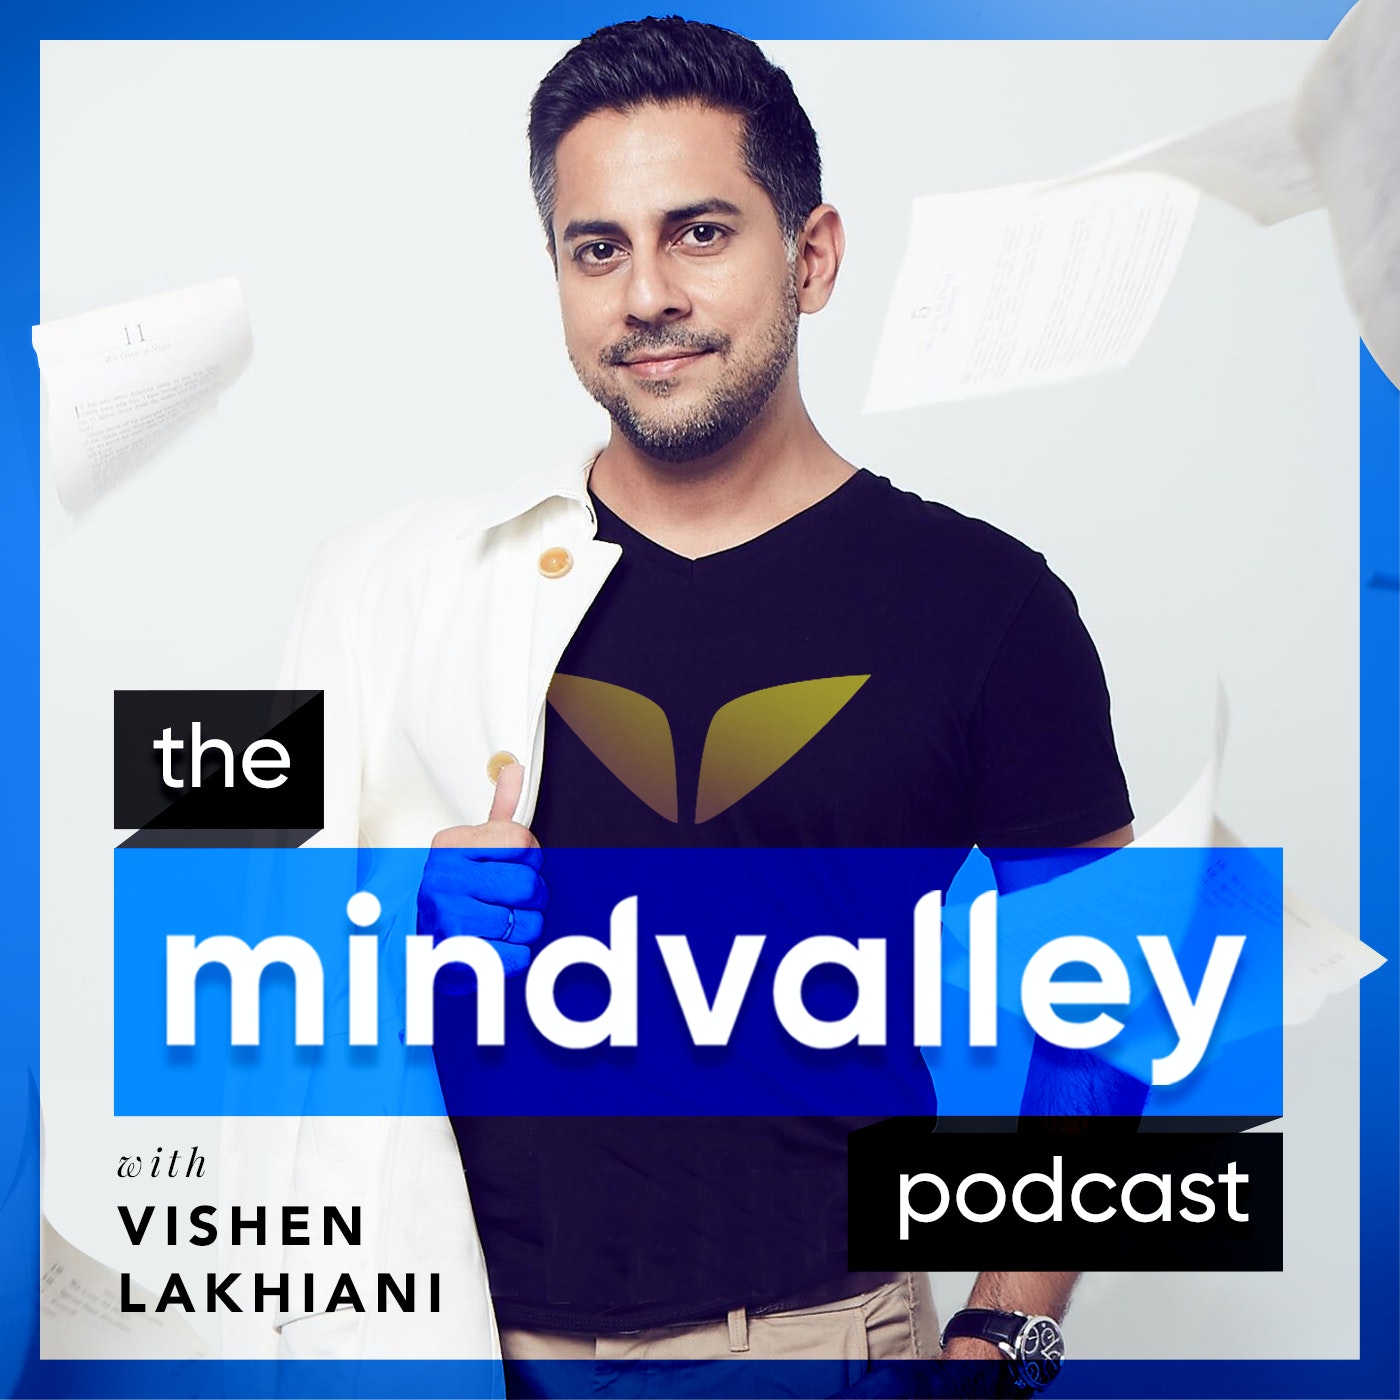 Best Motivational Podcast: Mindvalley